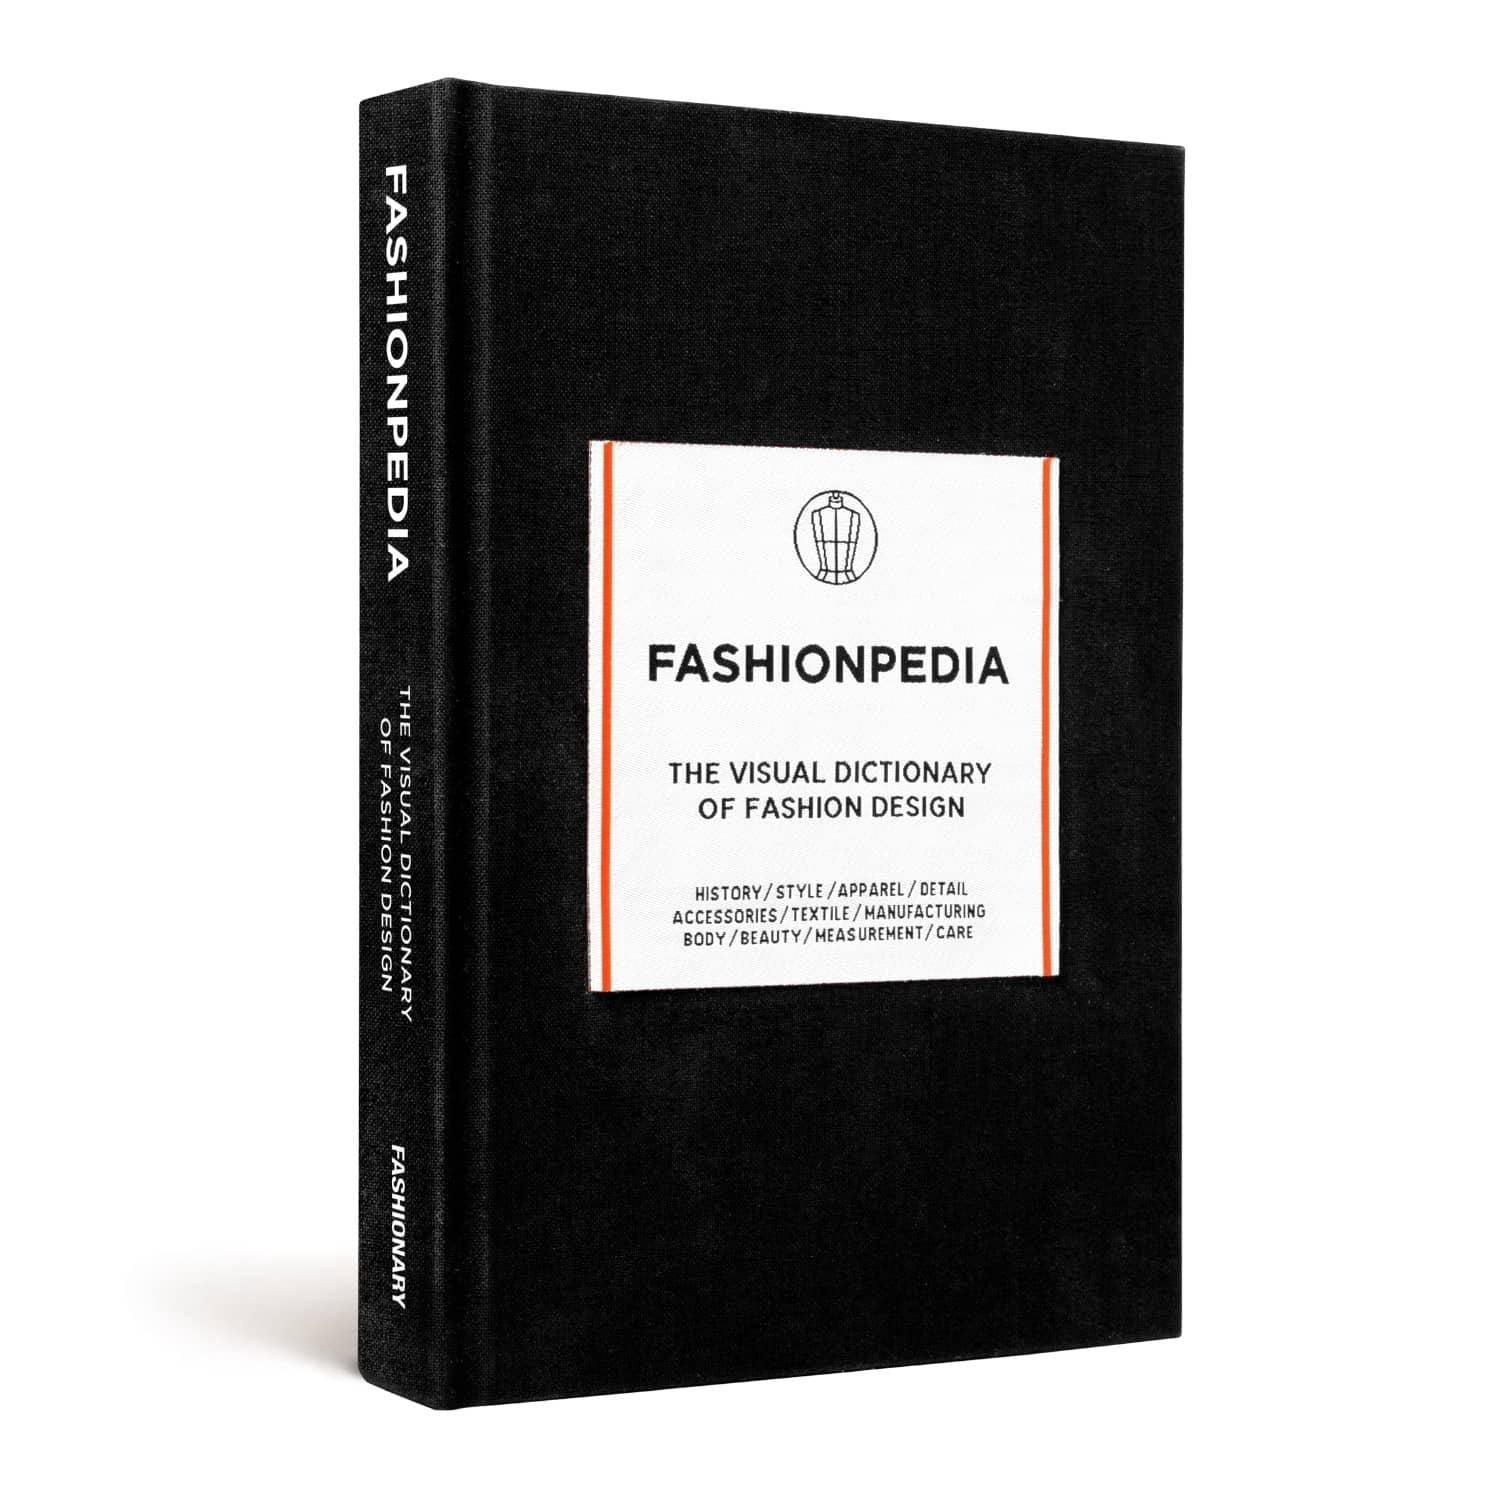 Fashionpedia - the Visual Dictionary of Fashion Design